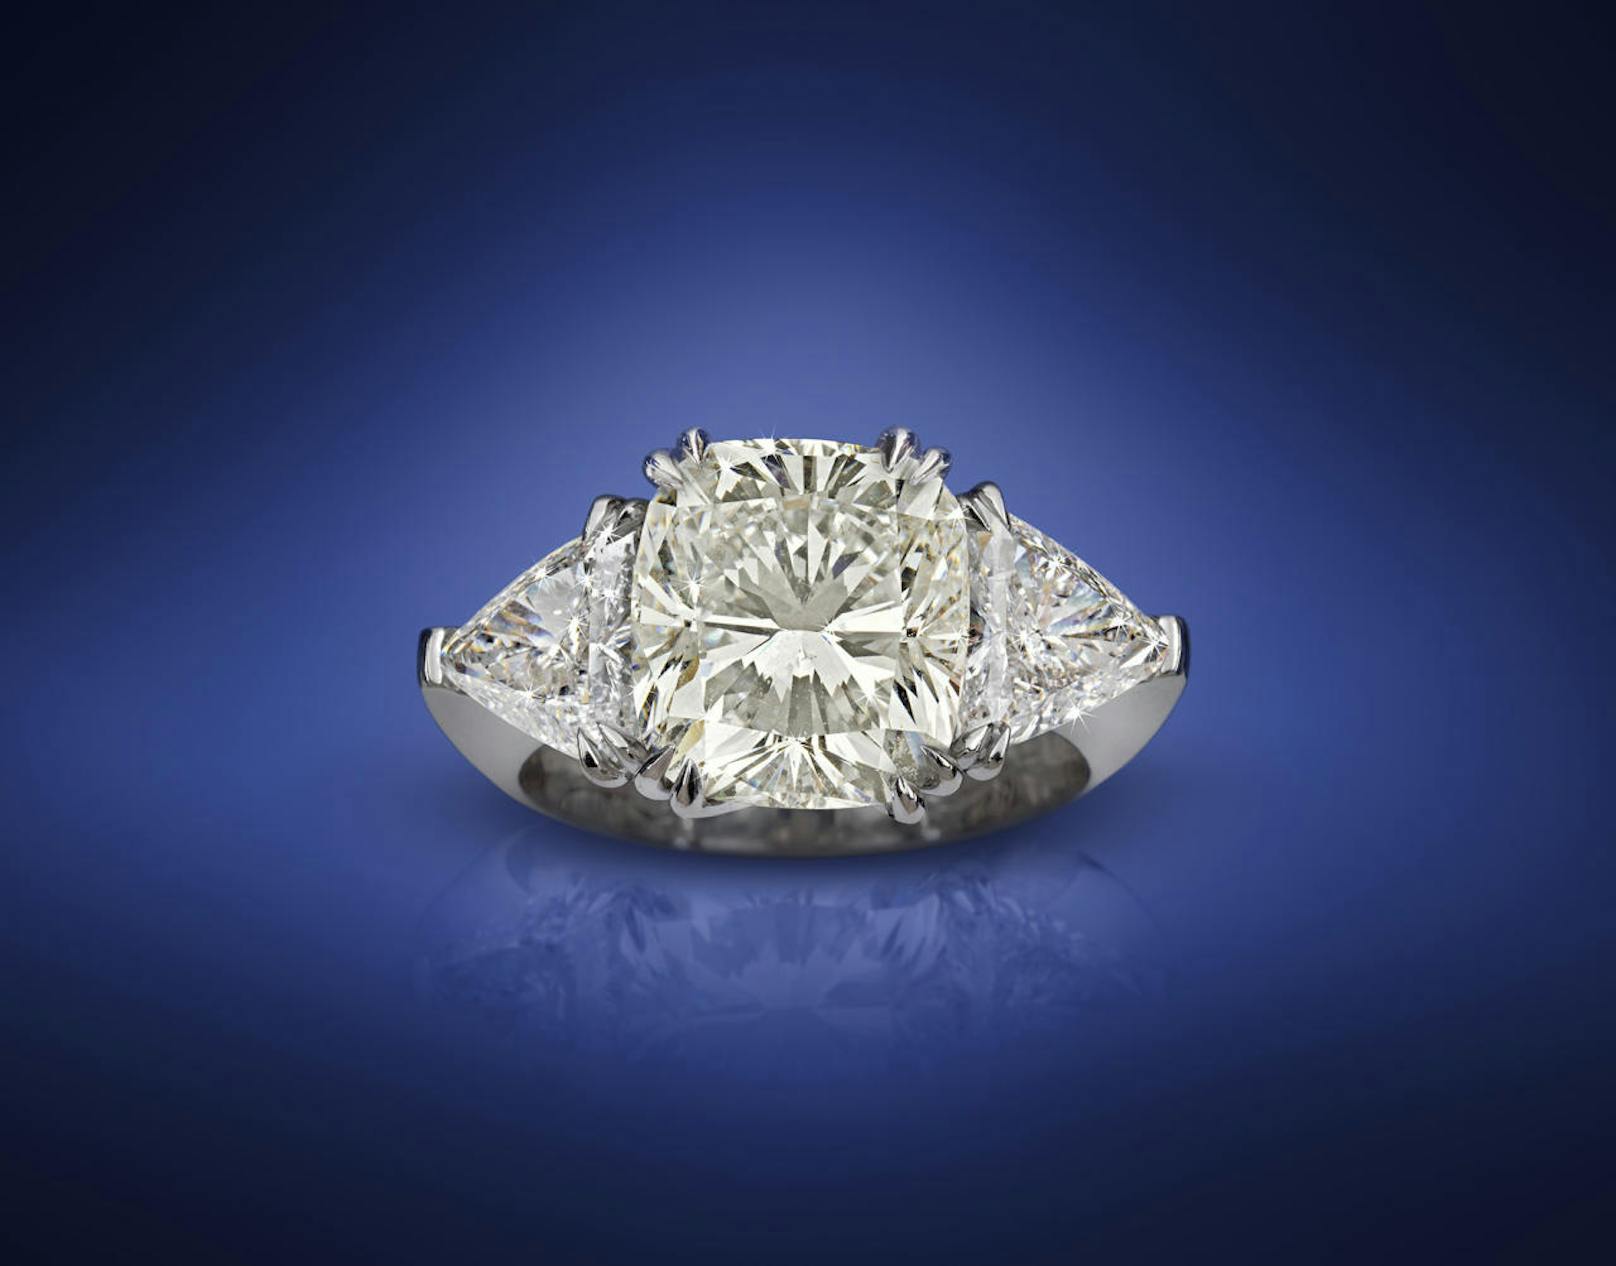 Dorotheum Auktion Juwelen (27.4.2017): Das teuerste Stück der Auktion:
Diamantring zusammen ca. 7,57 ct, 100.000-150.000 Euro